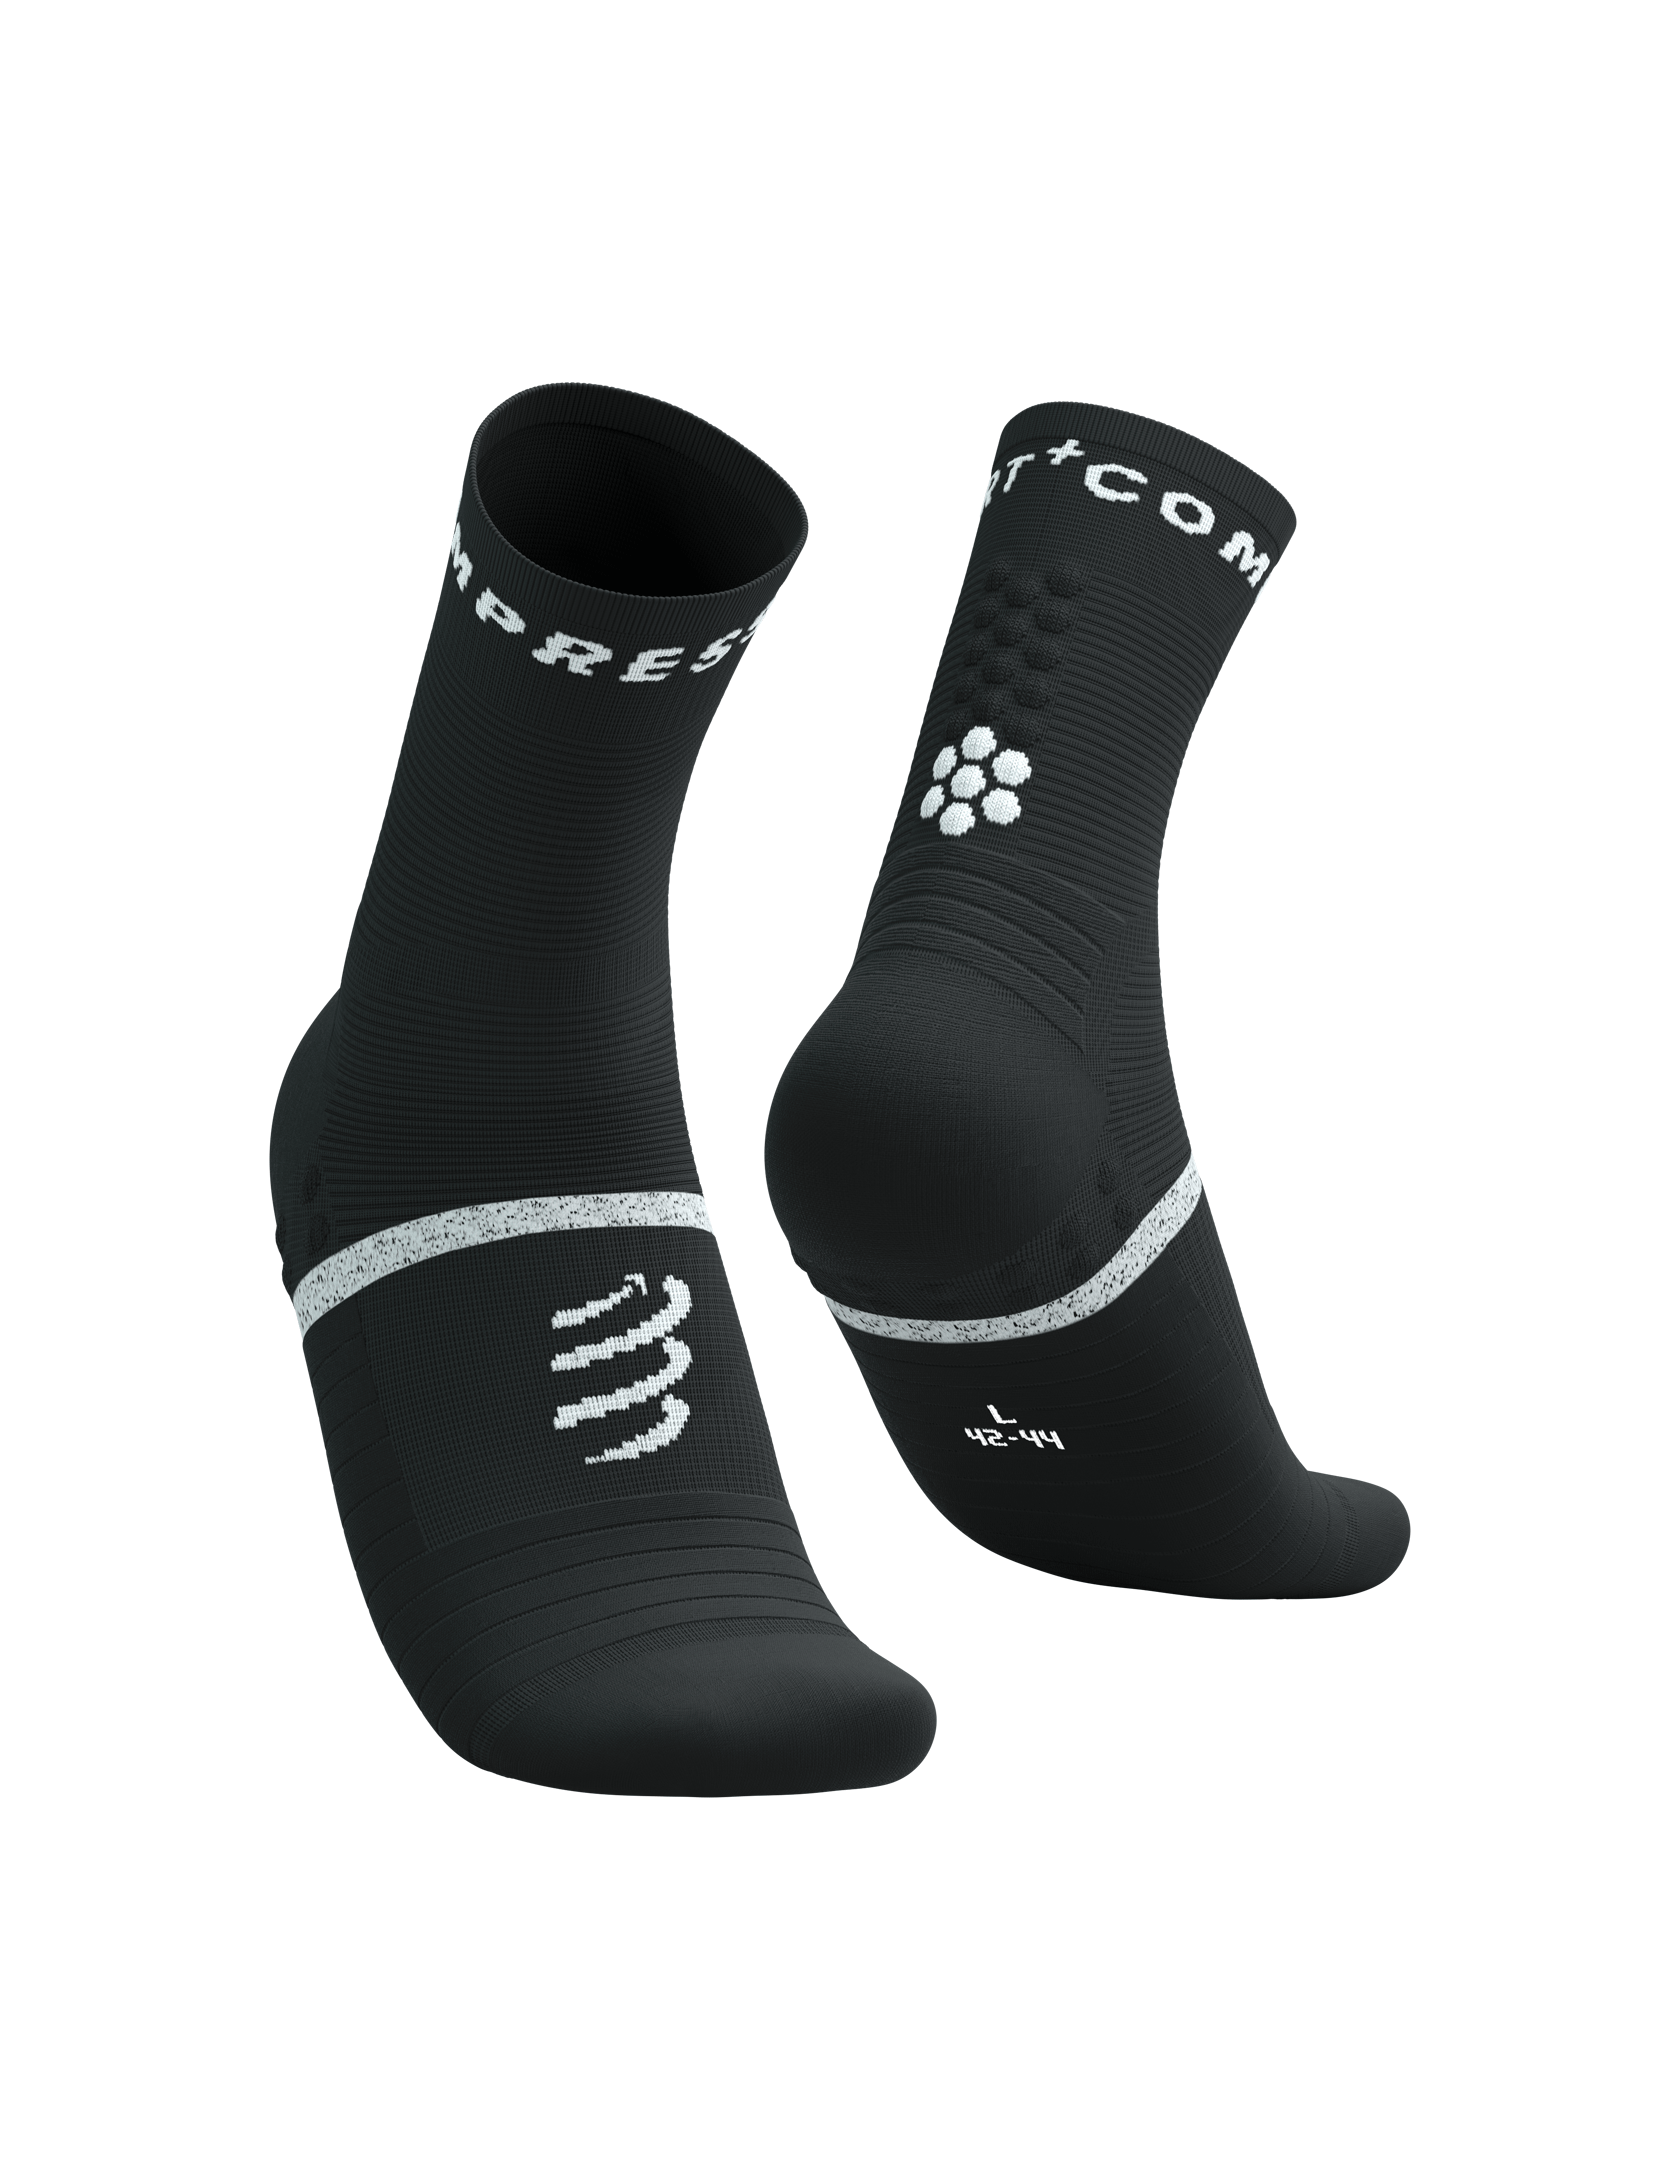 Pro Marathon Socks V2.0 - Black White | Sport socks | Compressport